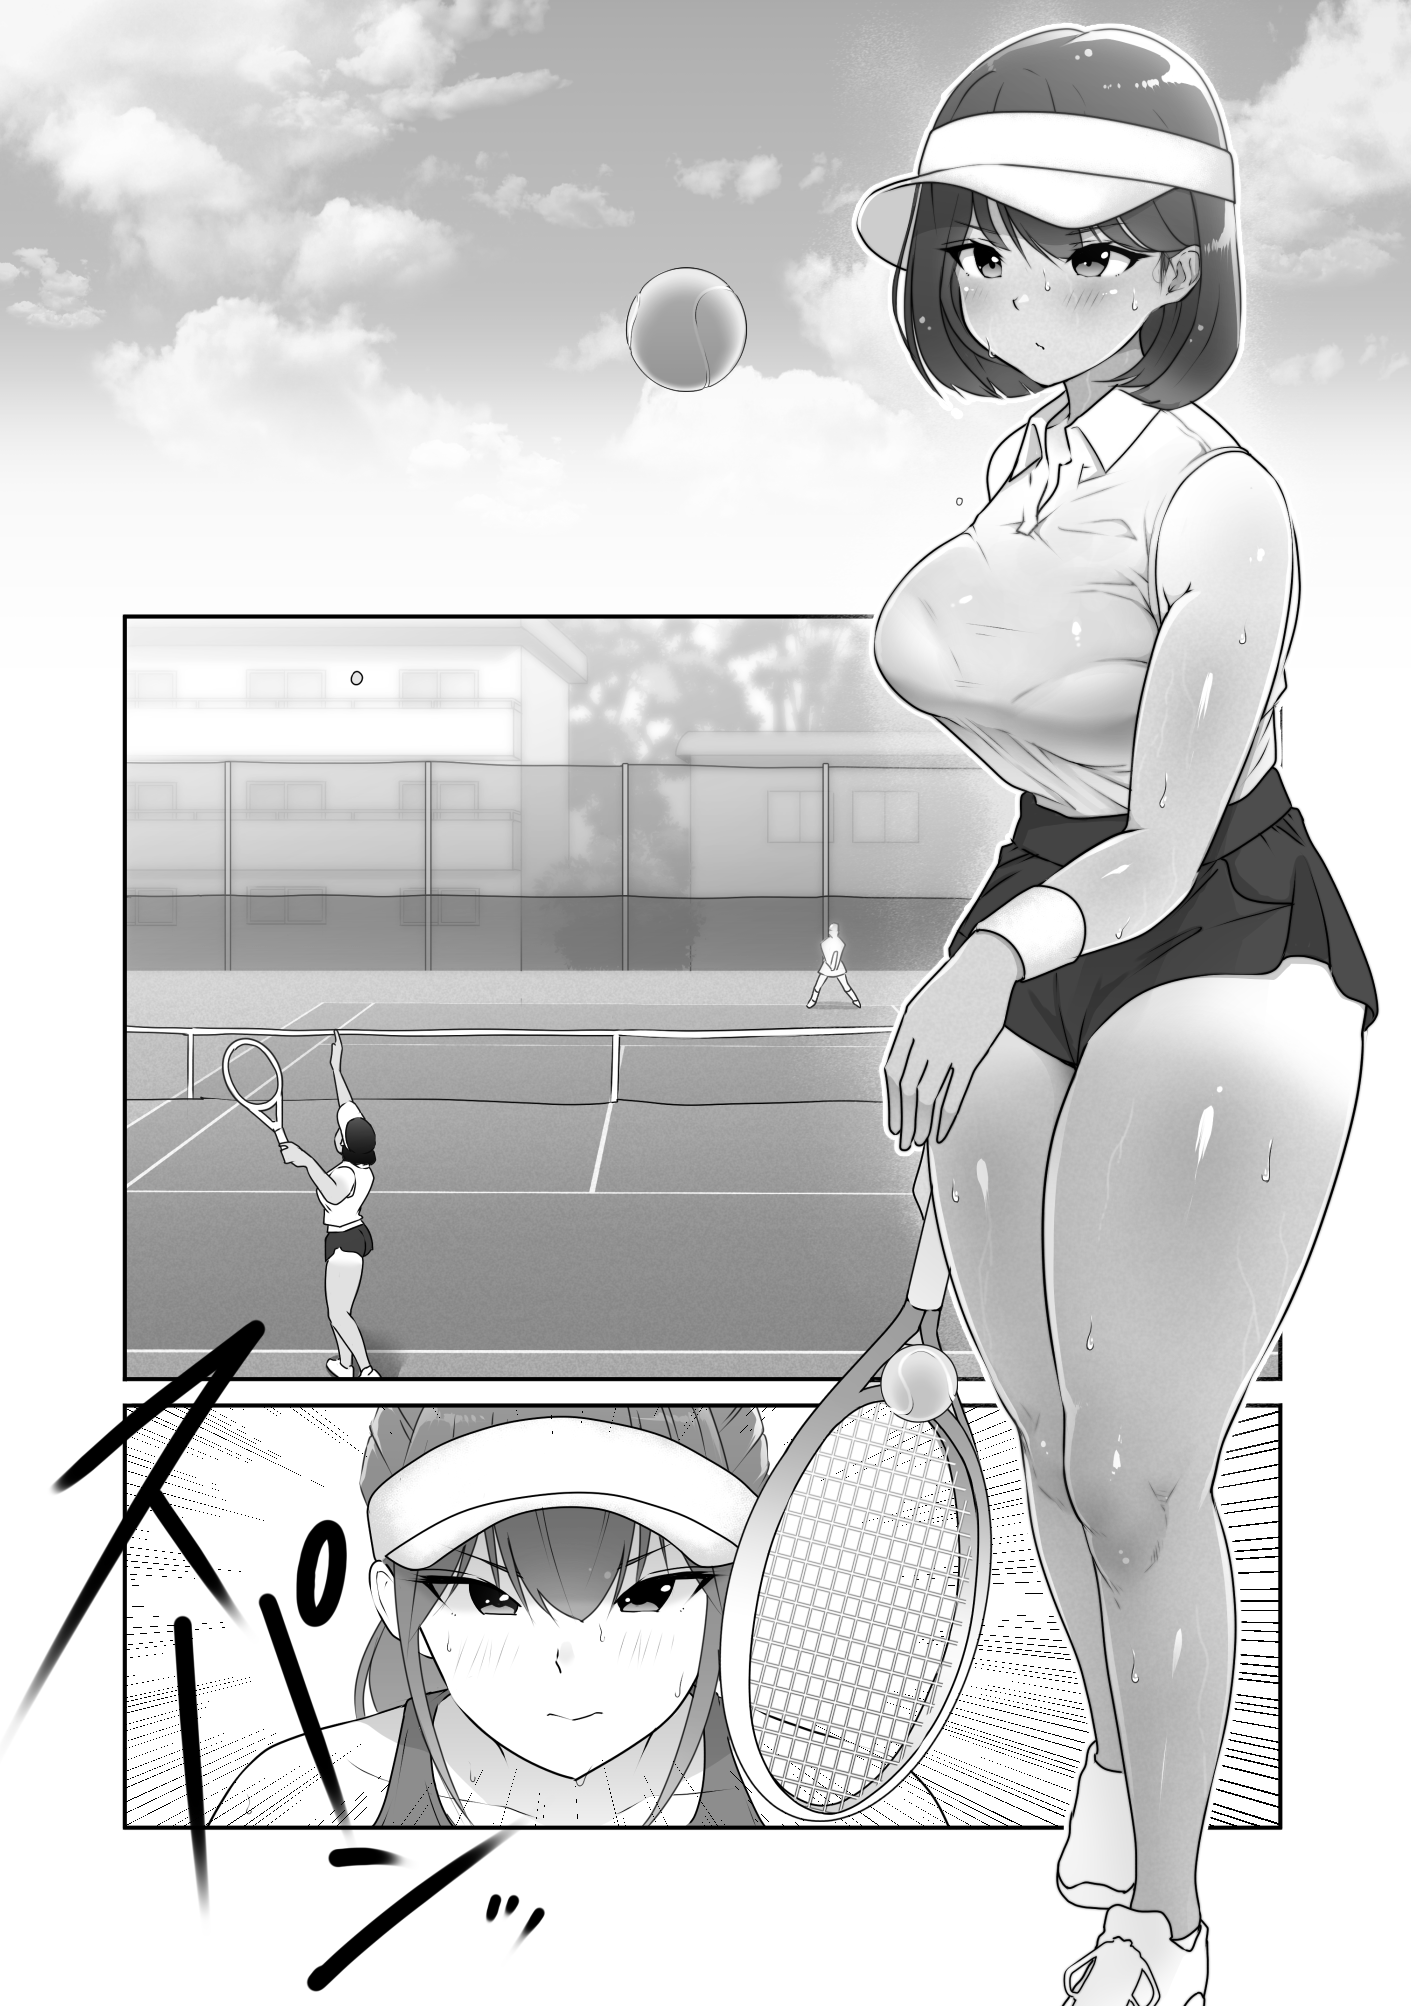 野球部の手におちた-4 【エロ漫画乱交】野球部の男子がテニス部の女子達をオナホ状態に種付けまくる！